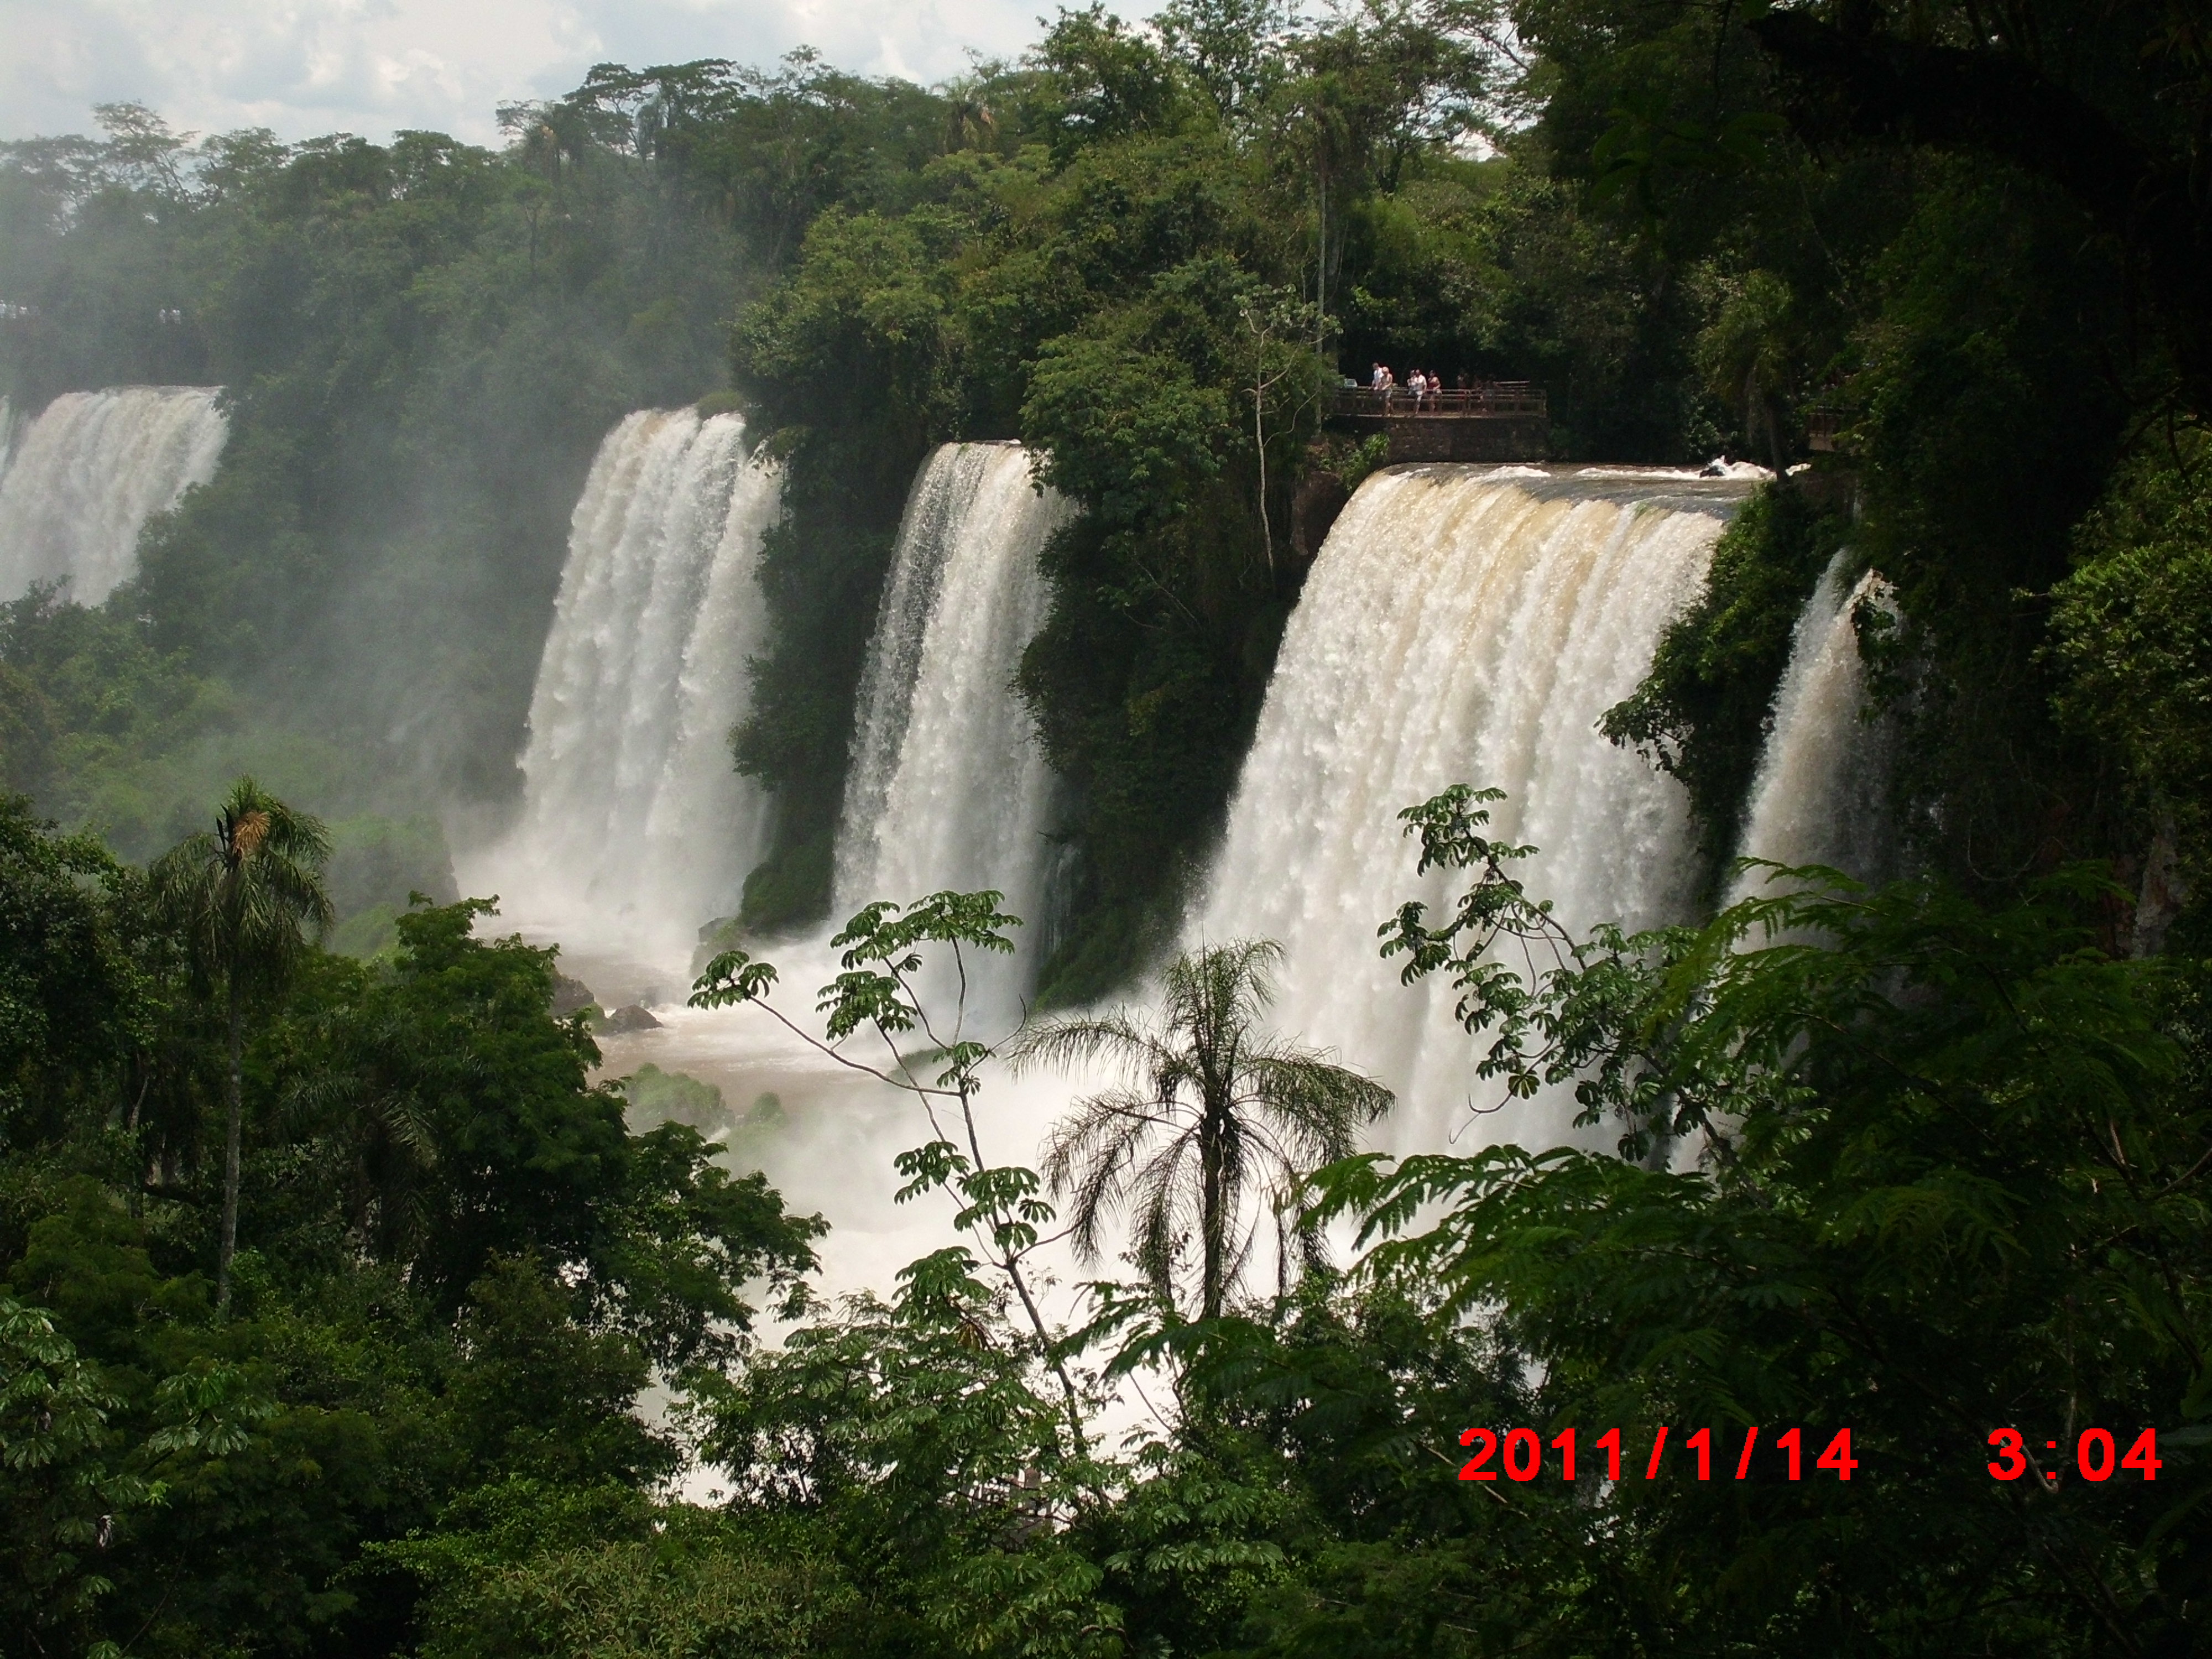 Iguazu Falls Wallpaper